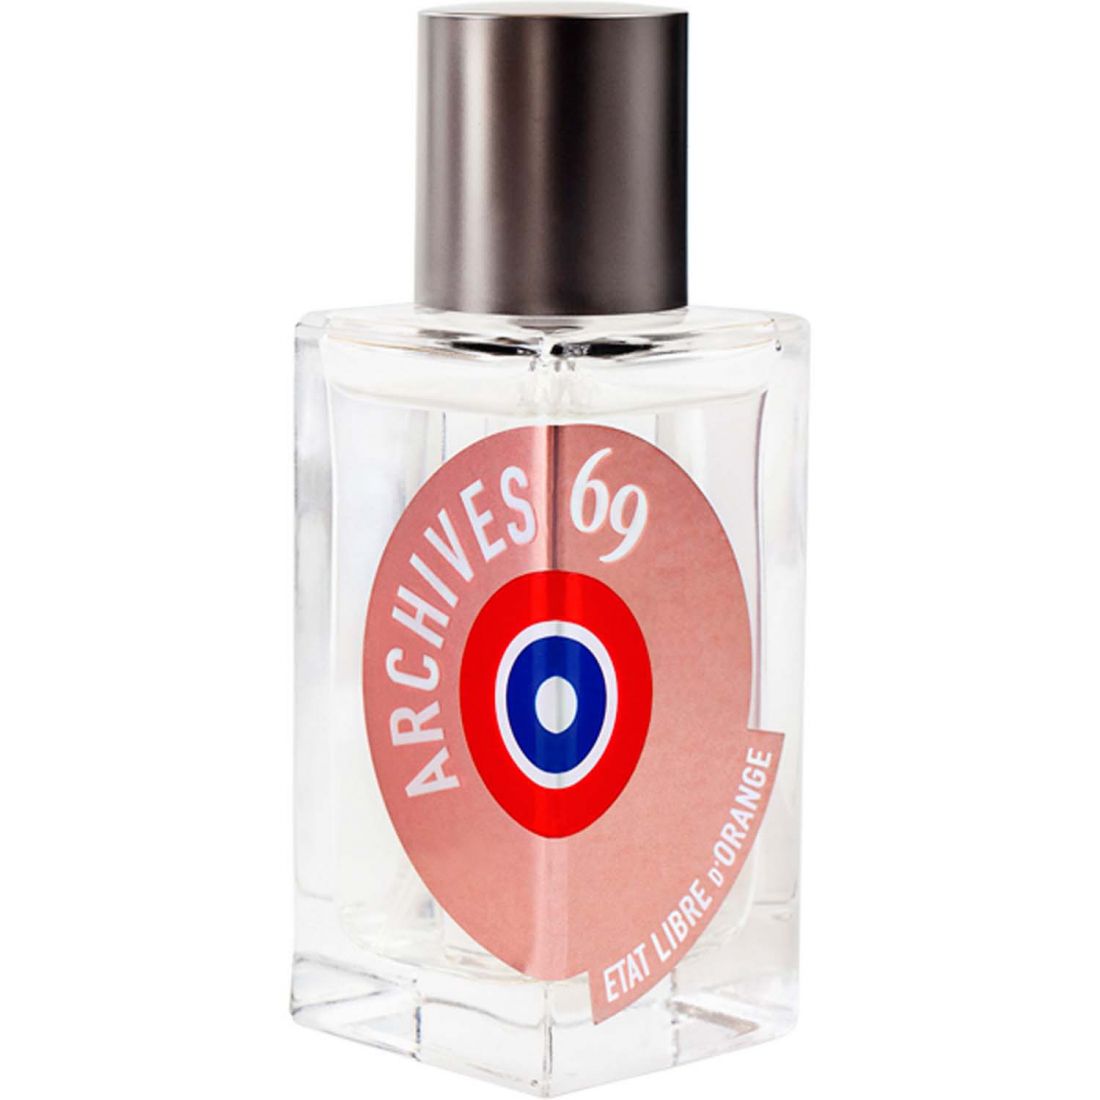 Etat Libre d'orange - Eau de parfum 'Archives 69' - 100 ml